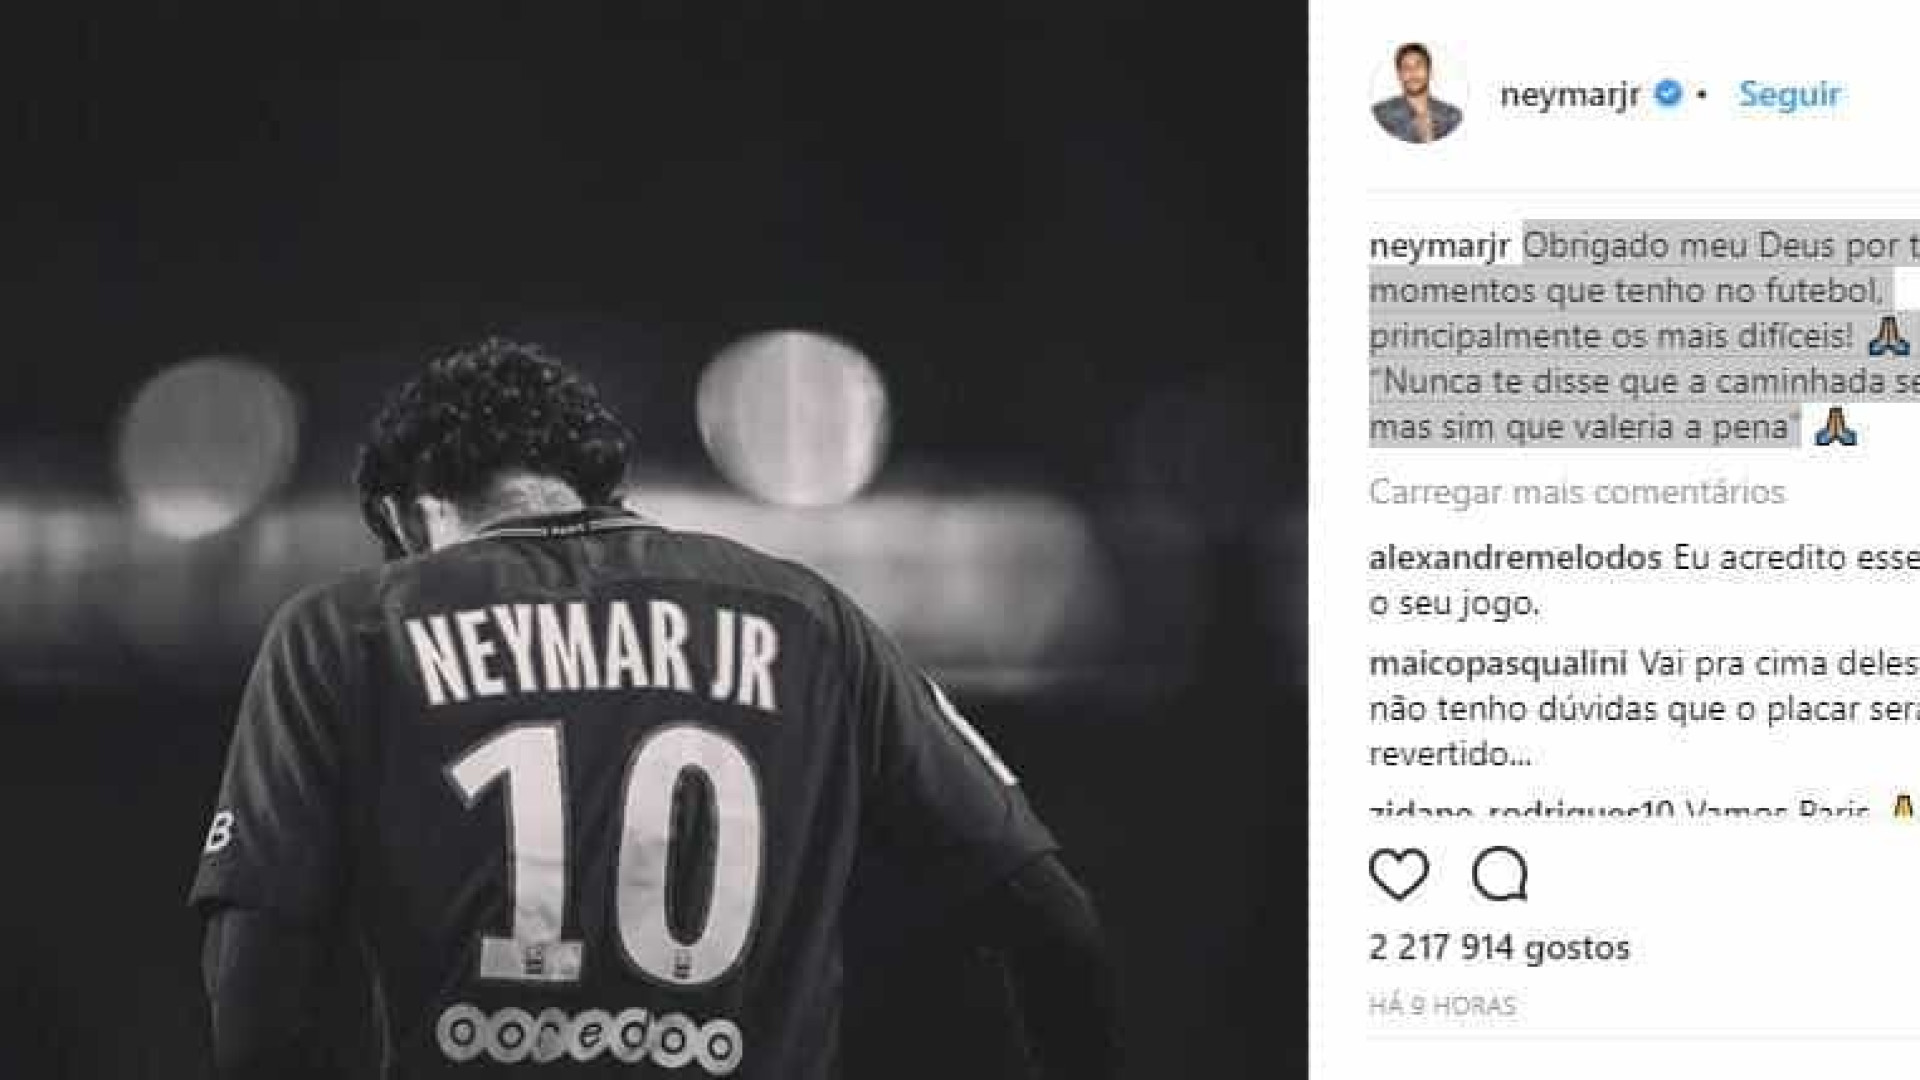 Neymar posta mensagem e cita 'momentos difícies'